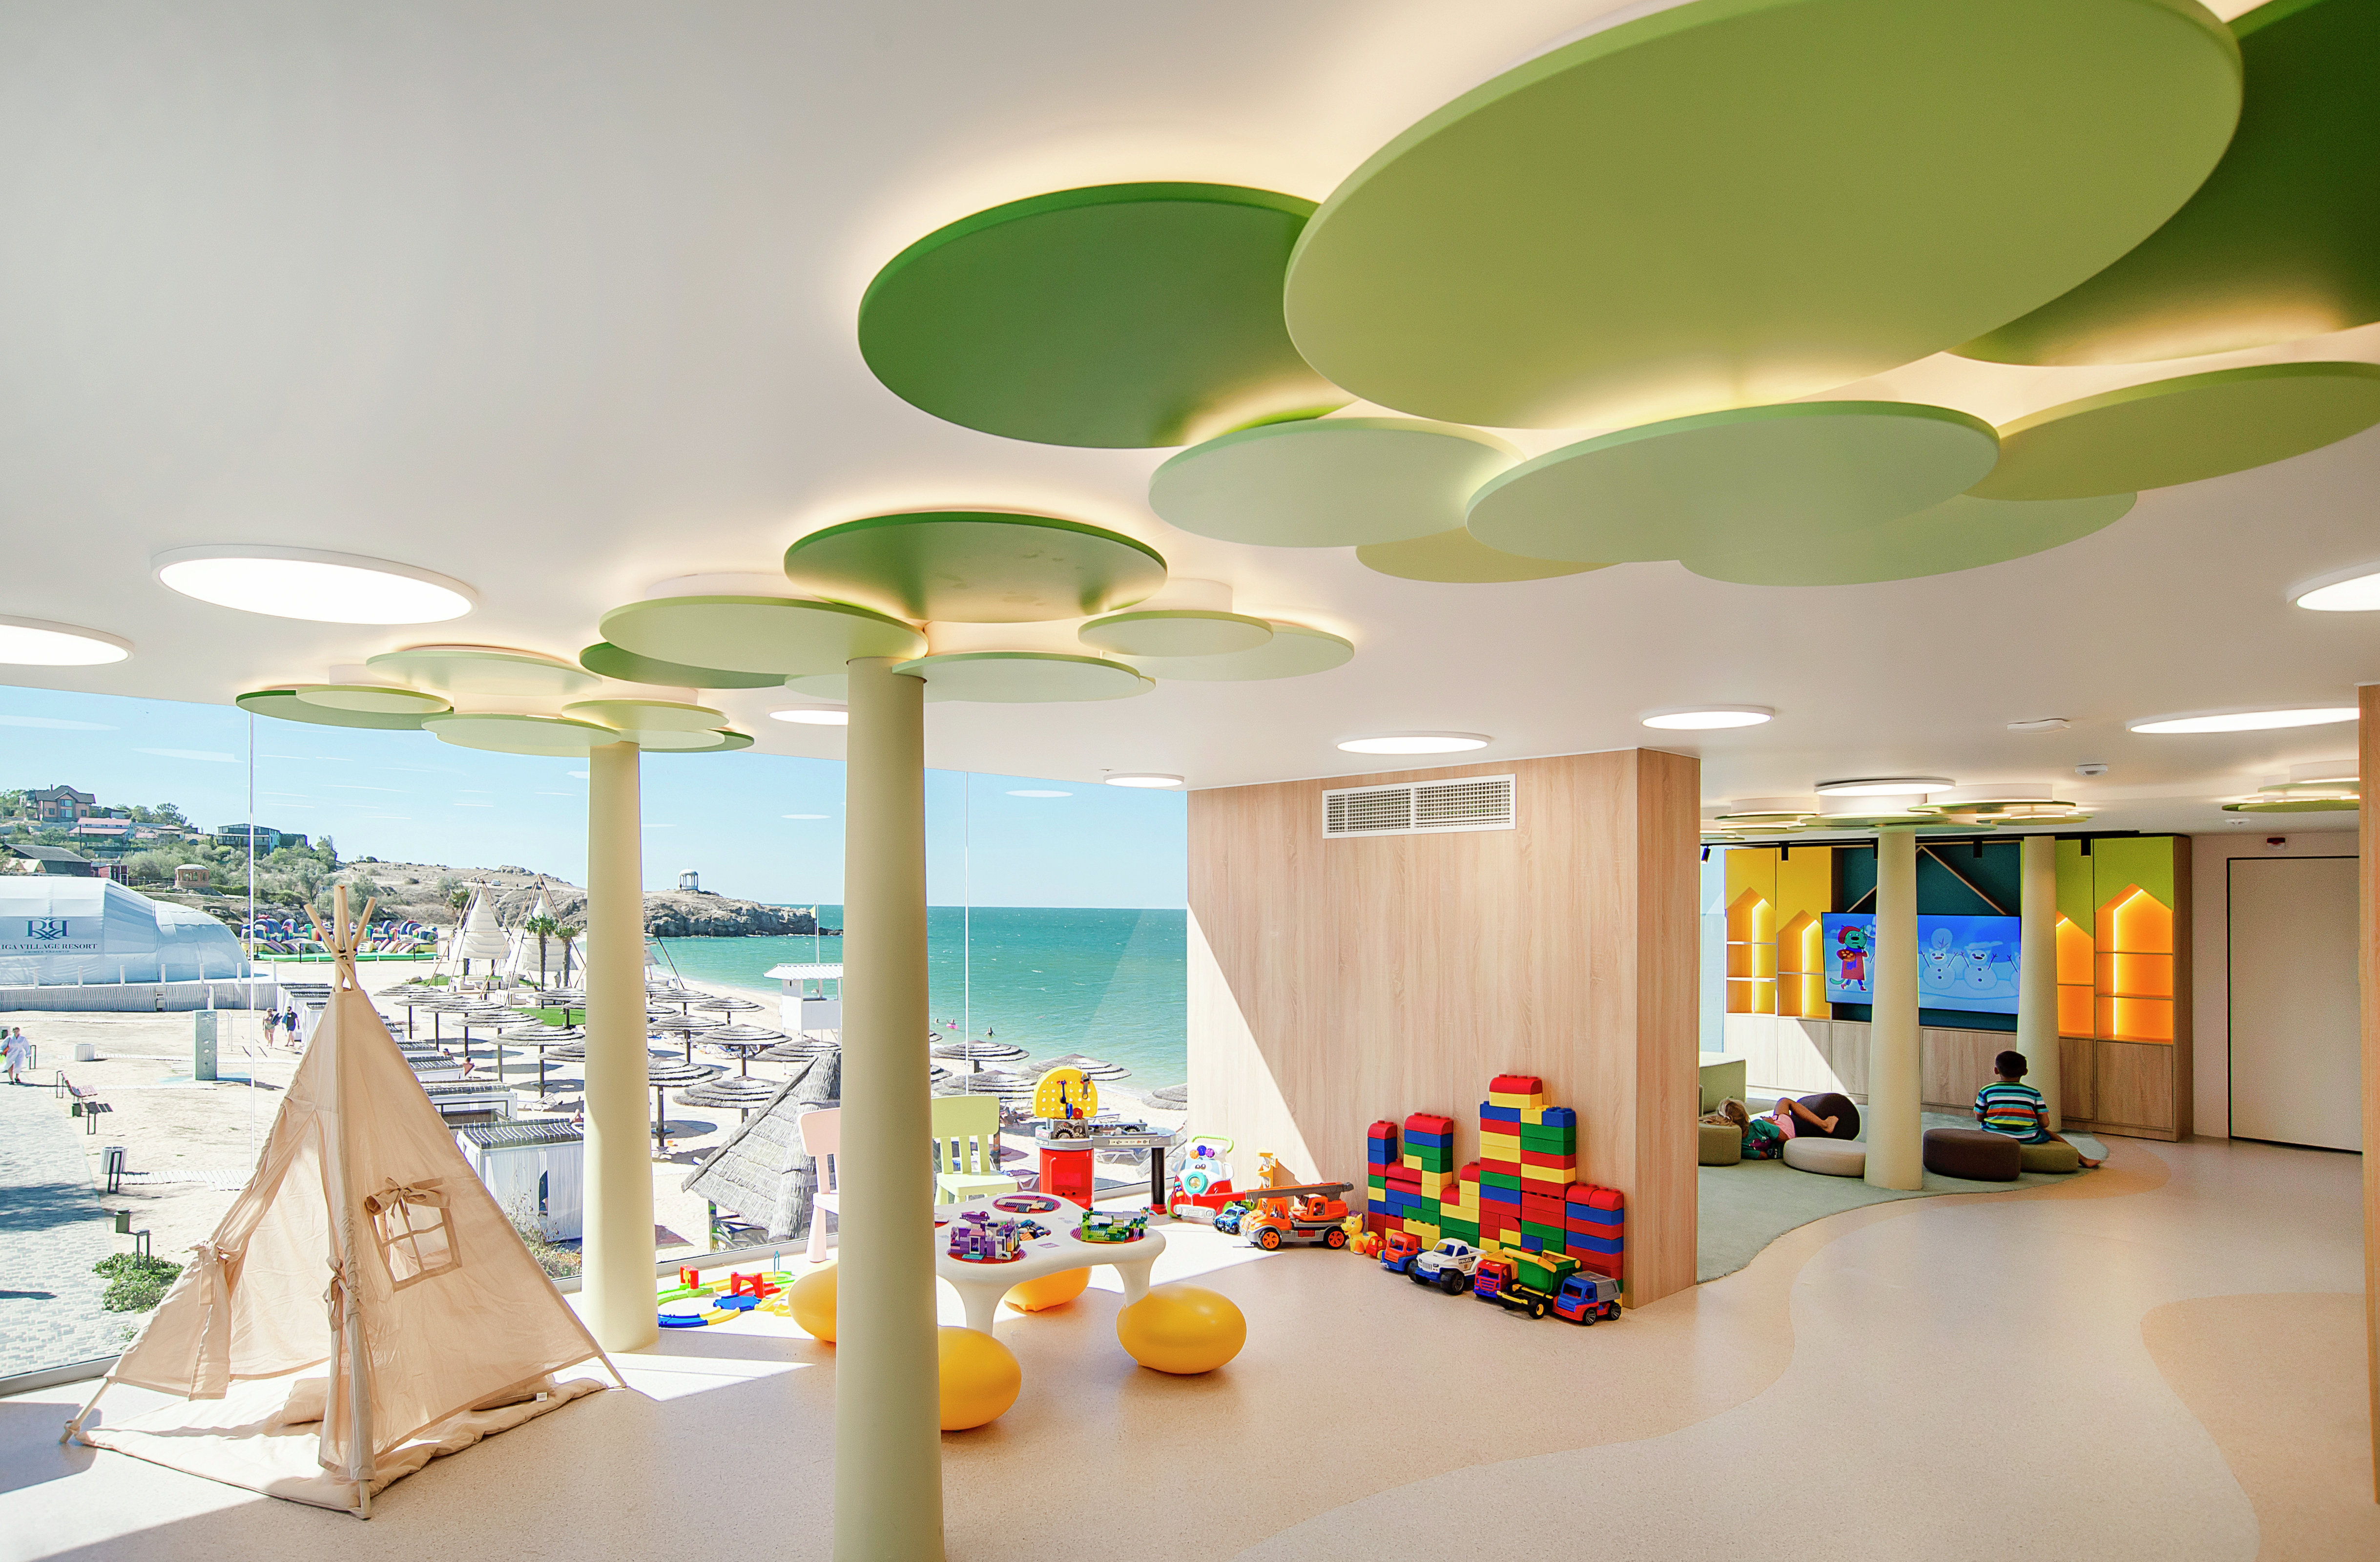 Детская комната в отеле Riga Village Resort 